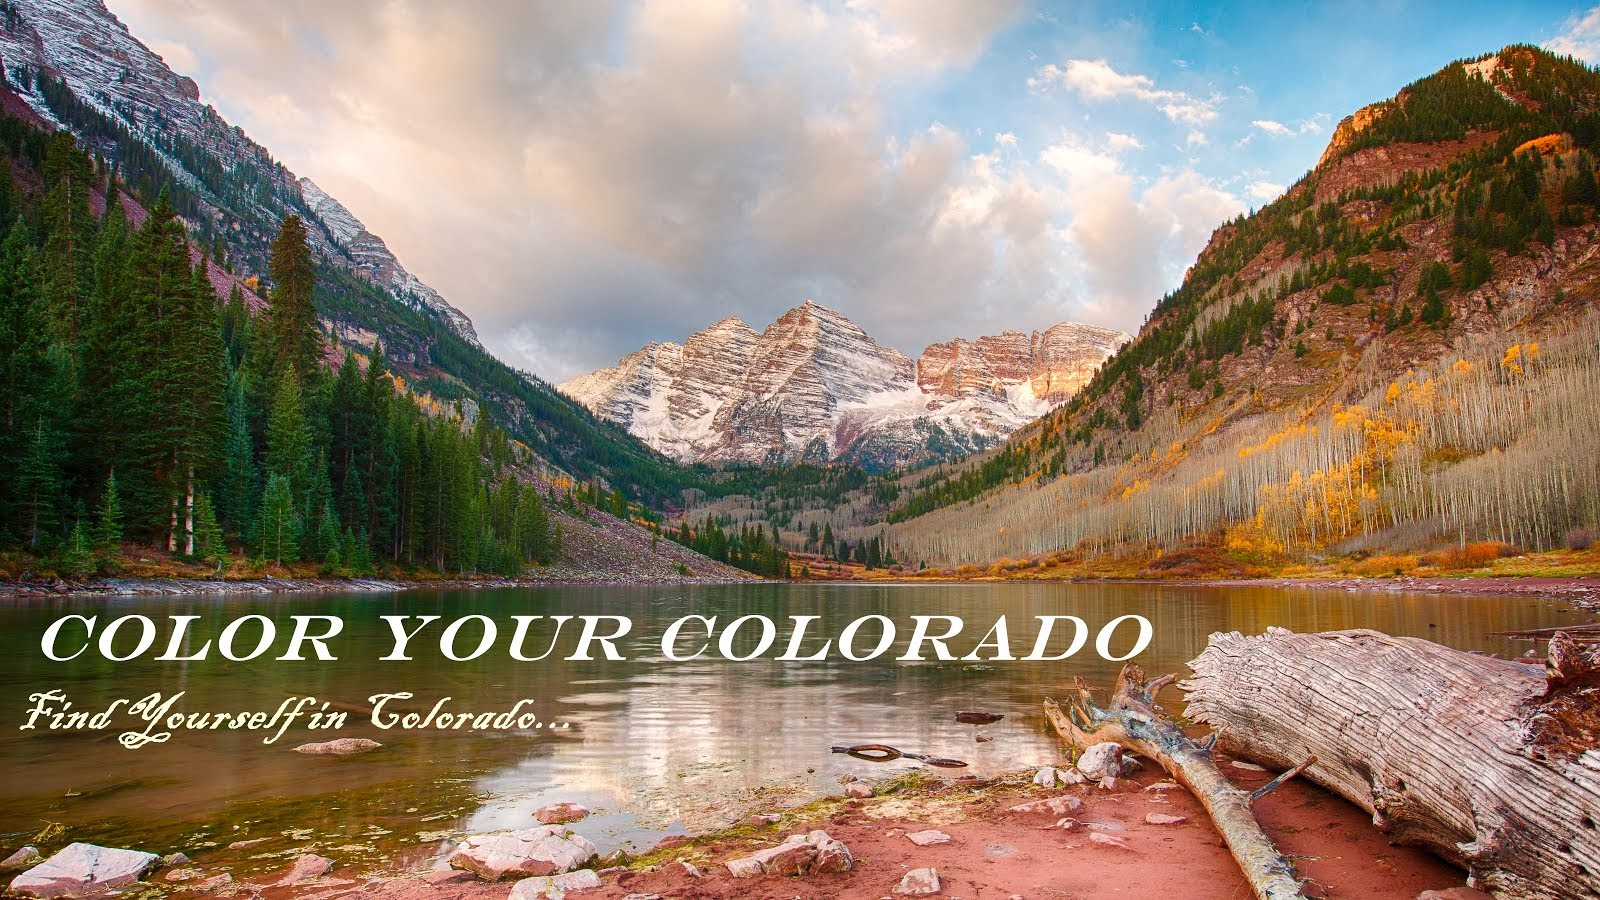 Color Your Colorado!